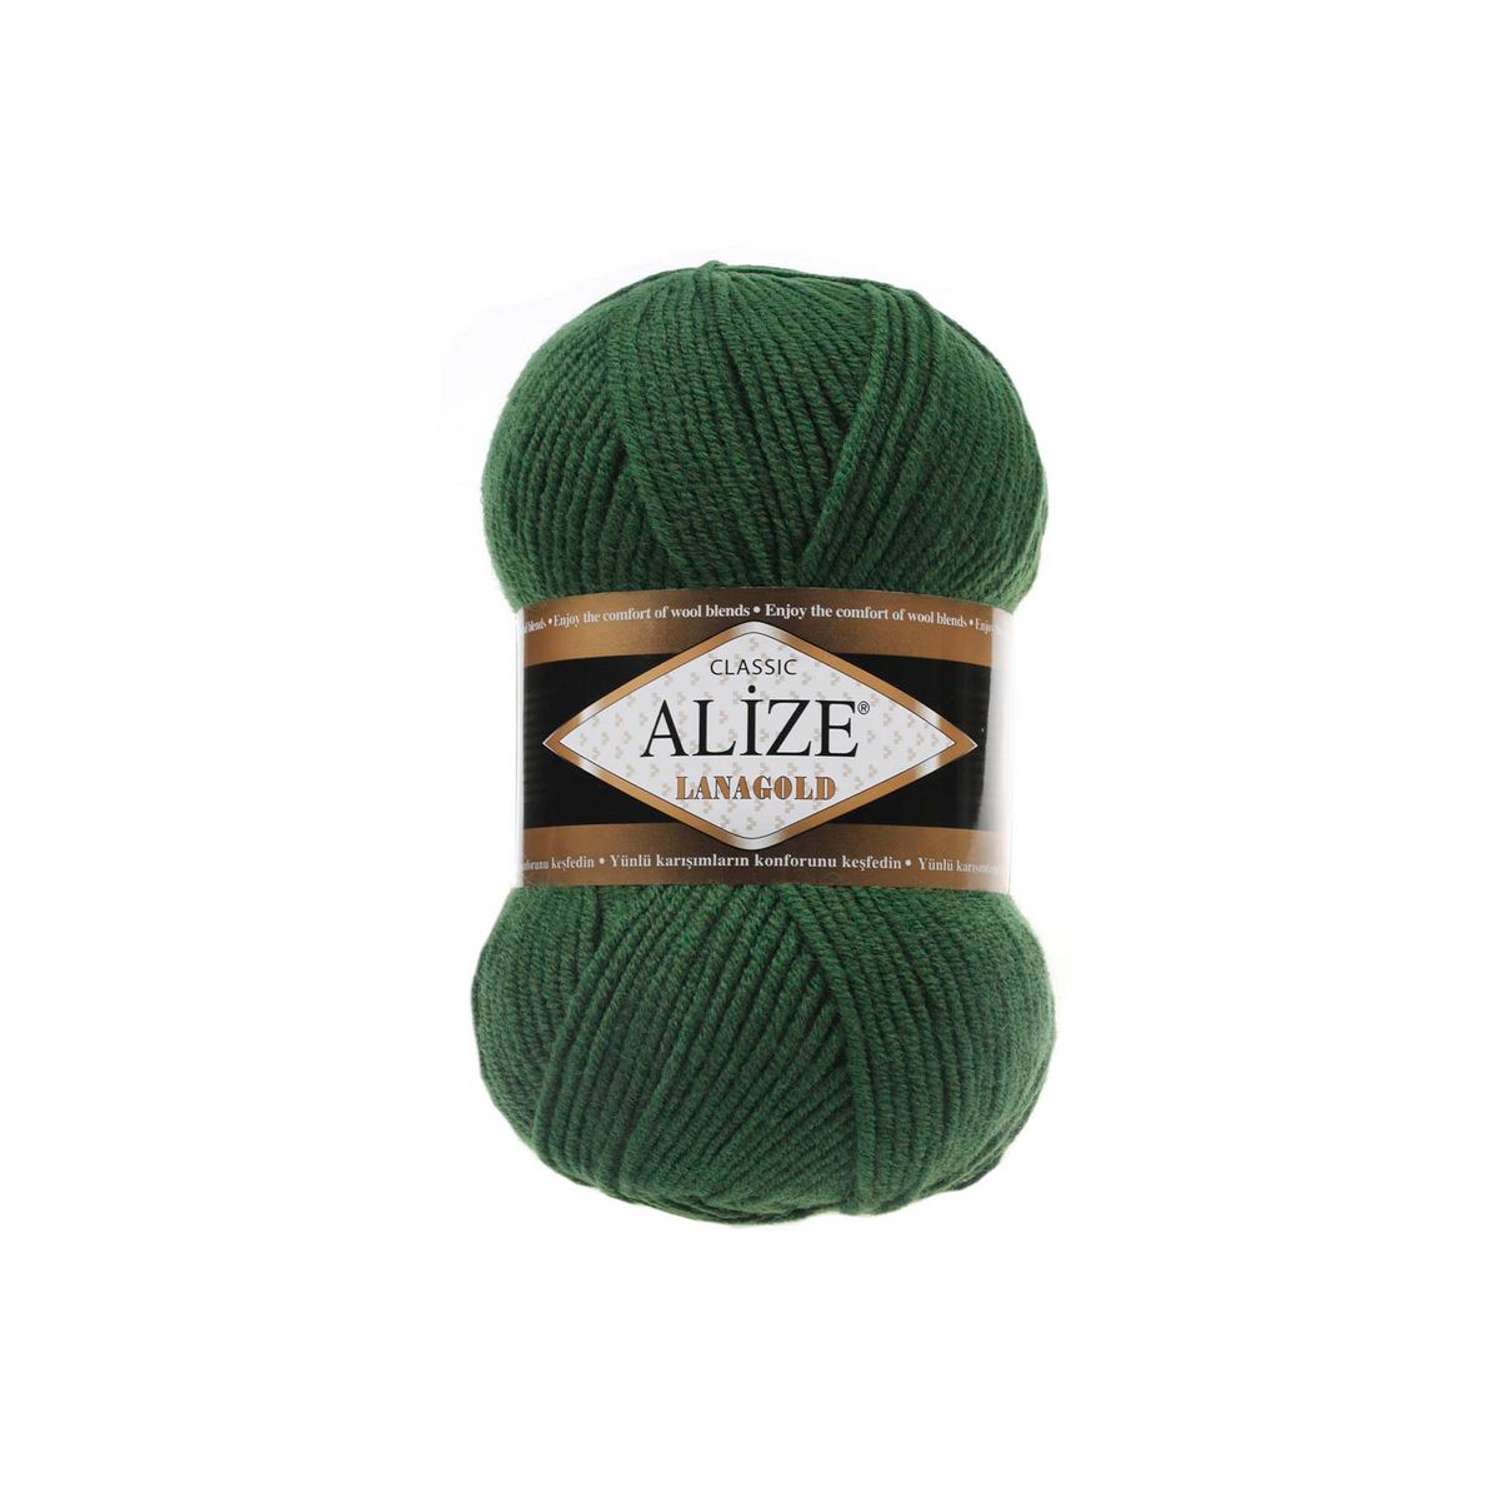 Пряжа Alize полушерстяная мягкая тонкая теплая Lanagold 100 гр 240 м 5 мотков 118 темно-зеленый - фото 6